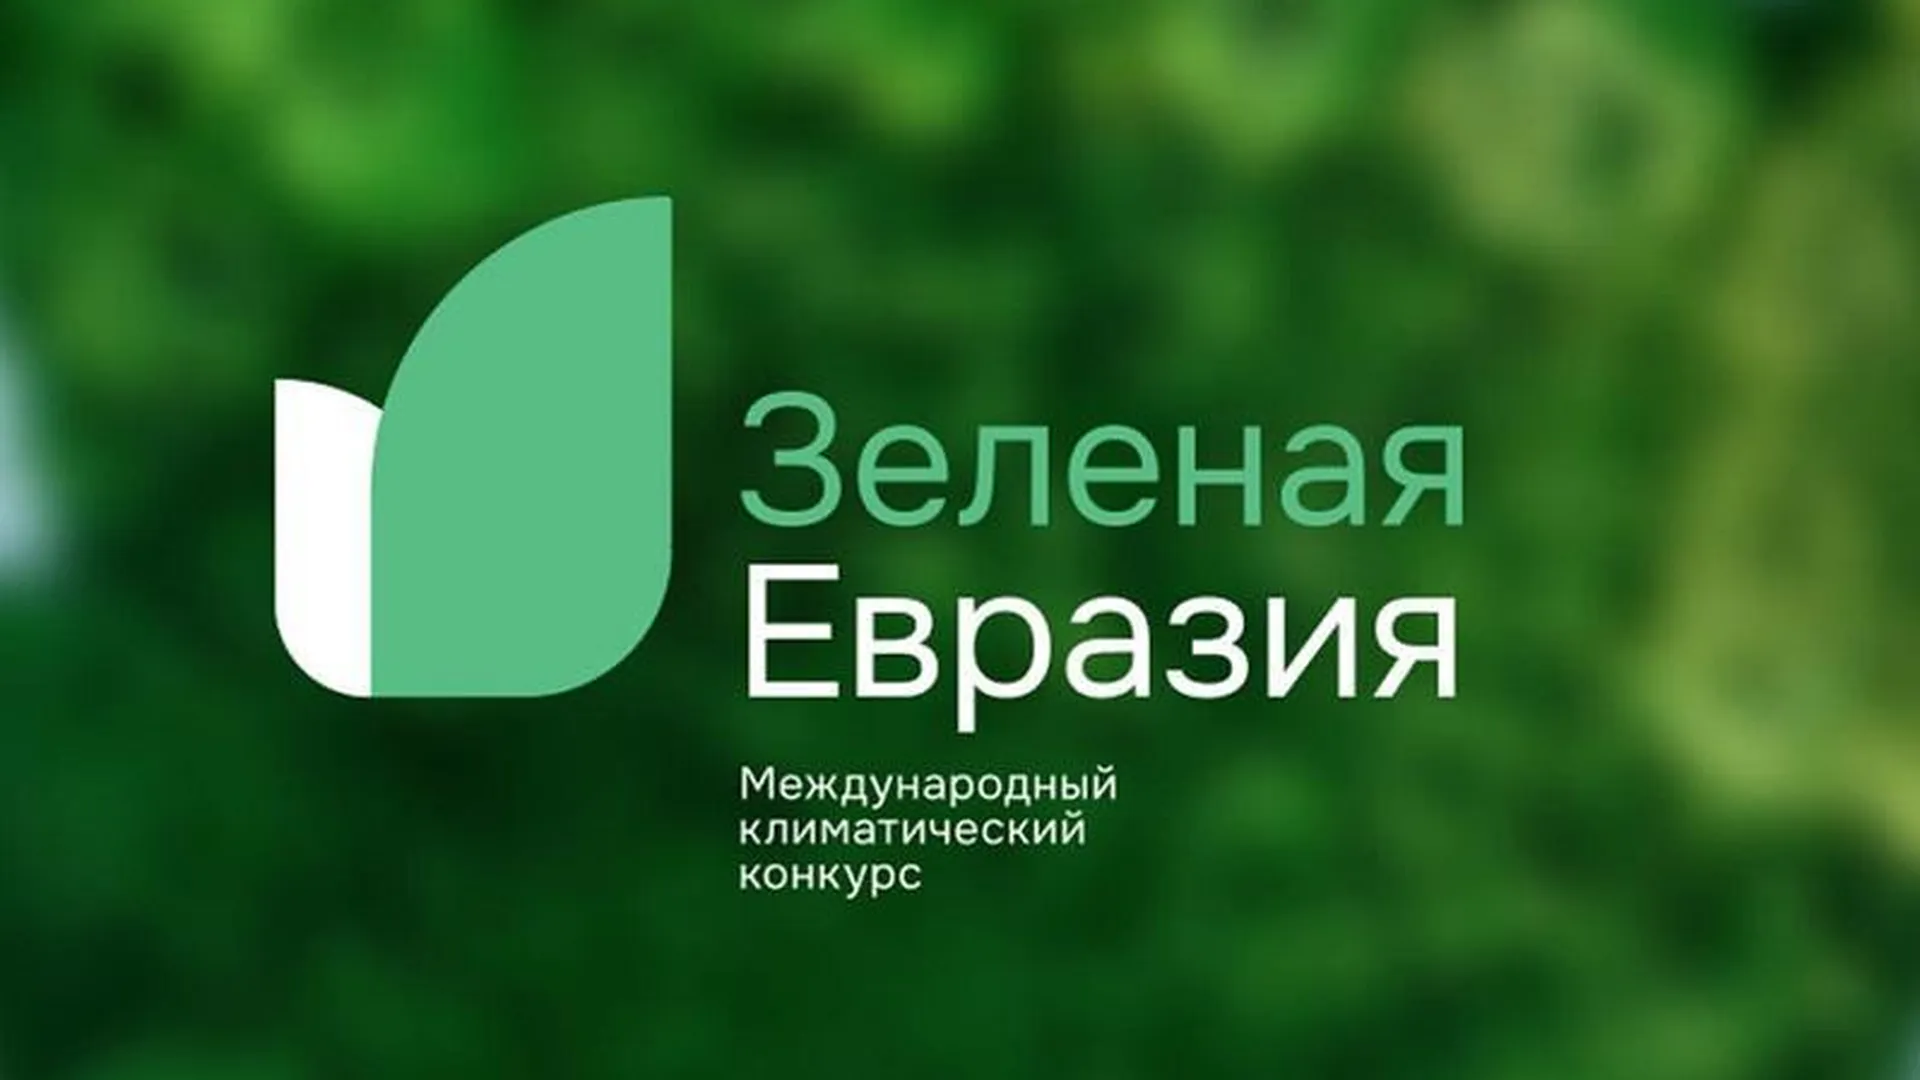 Минэкологии Подмосковья сообщило о старте международного конкурса «Зеленая Евразия»